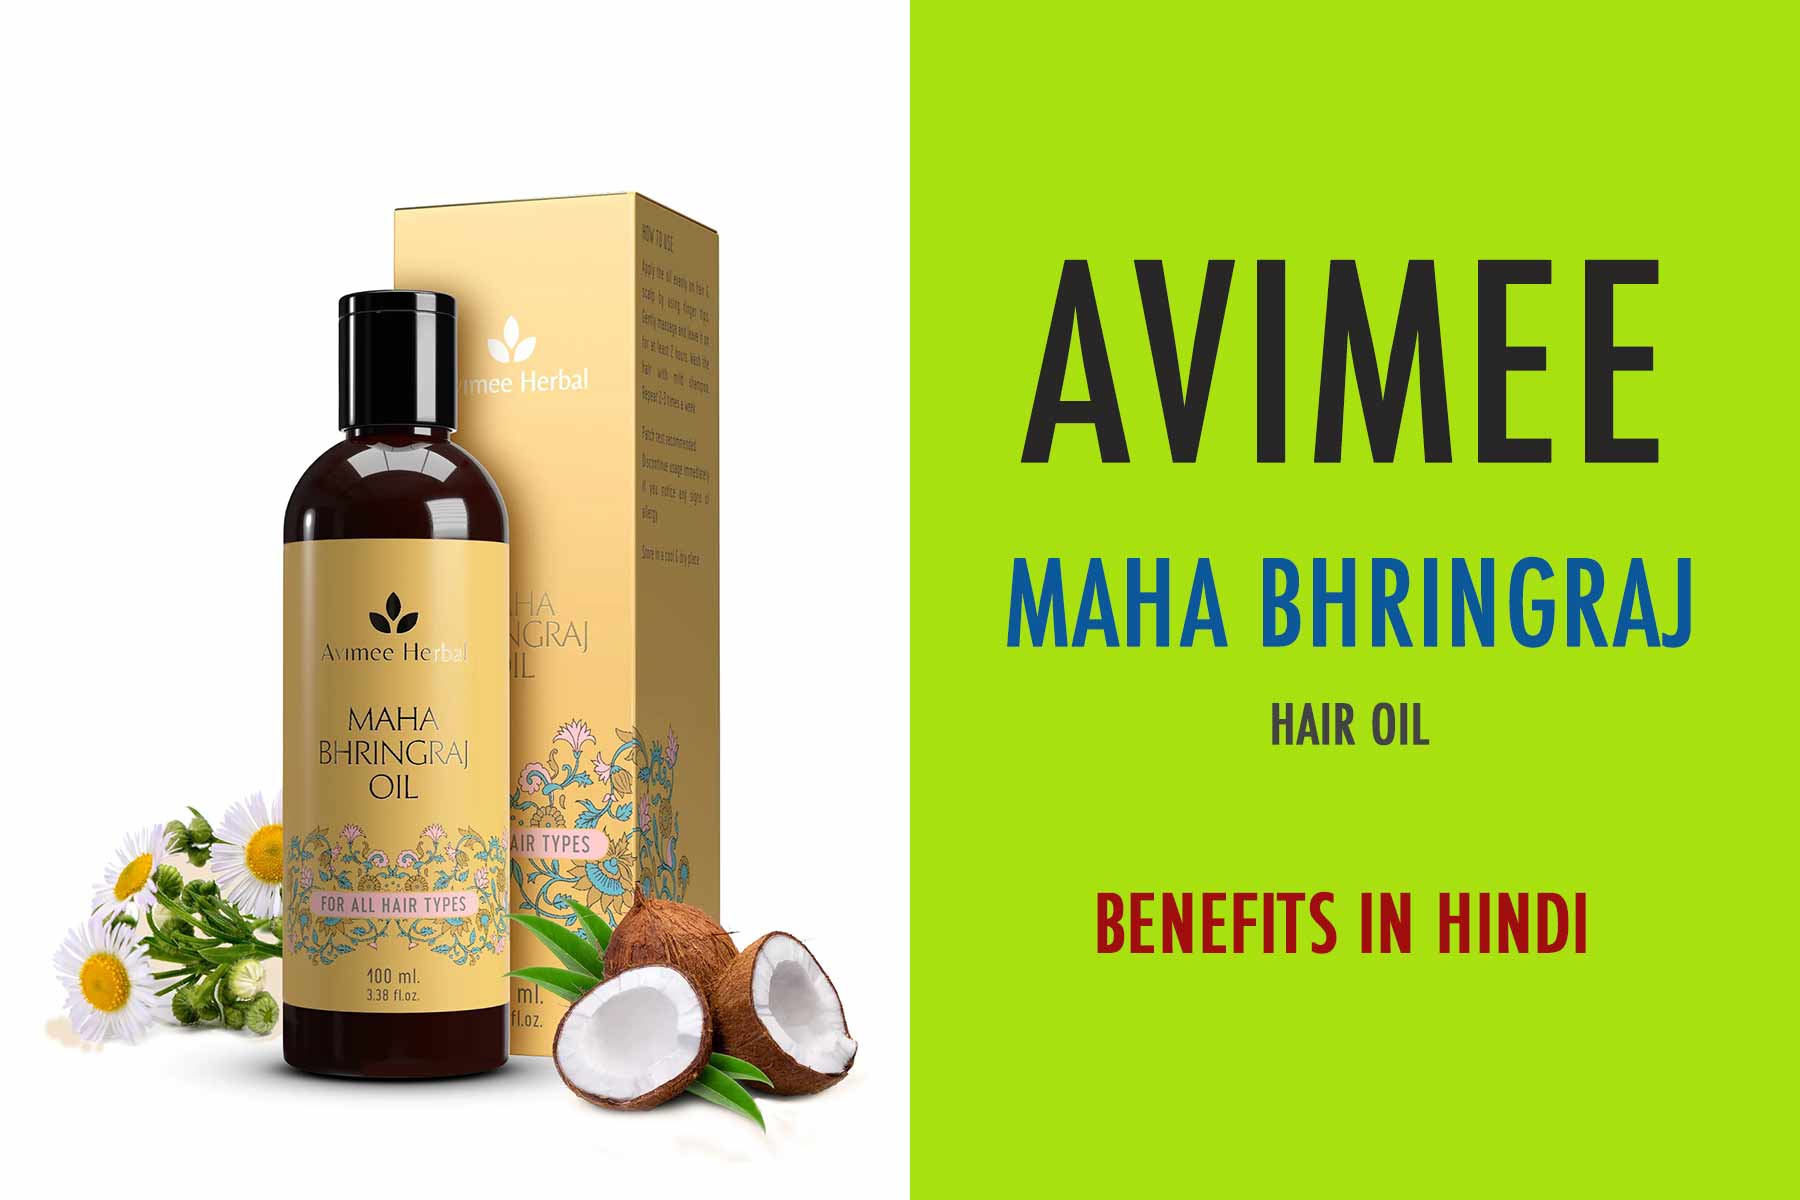 avimee maha bhringraj hair oil benefit in hindi